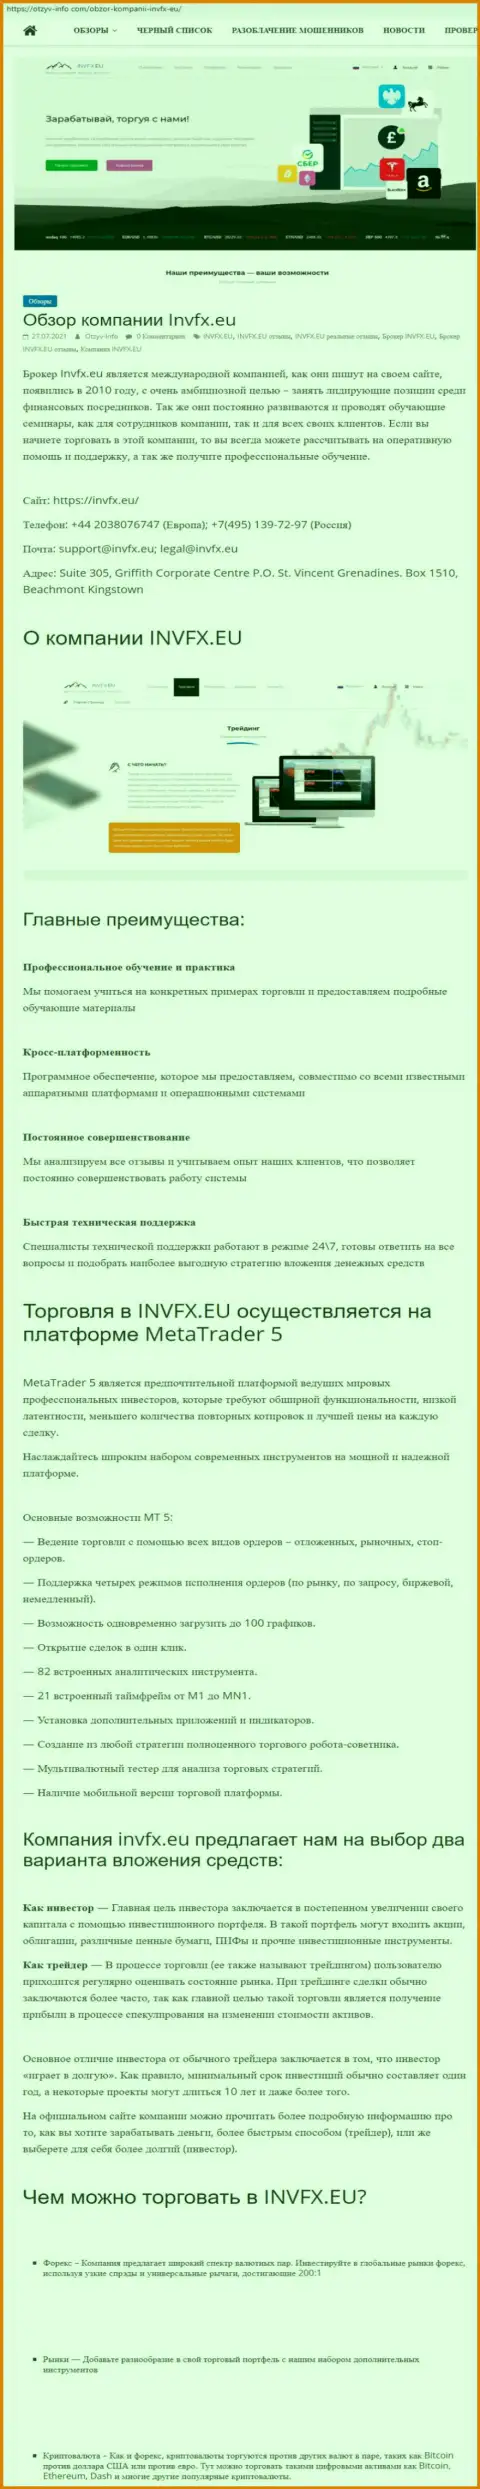 Web-сервис otzyv info com разместил статью об Форекс-брокерской компании INVFX Eu